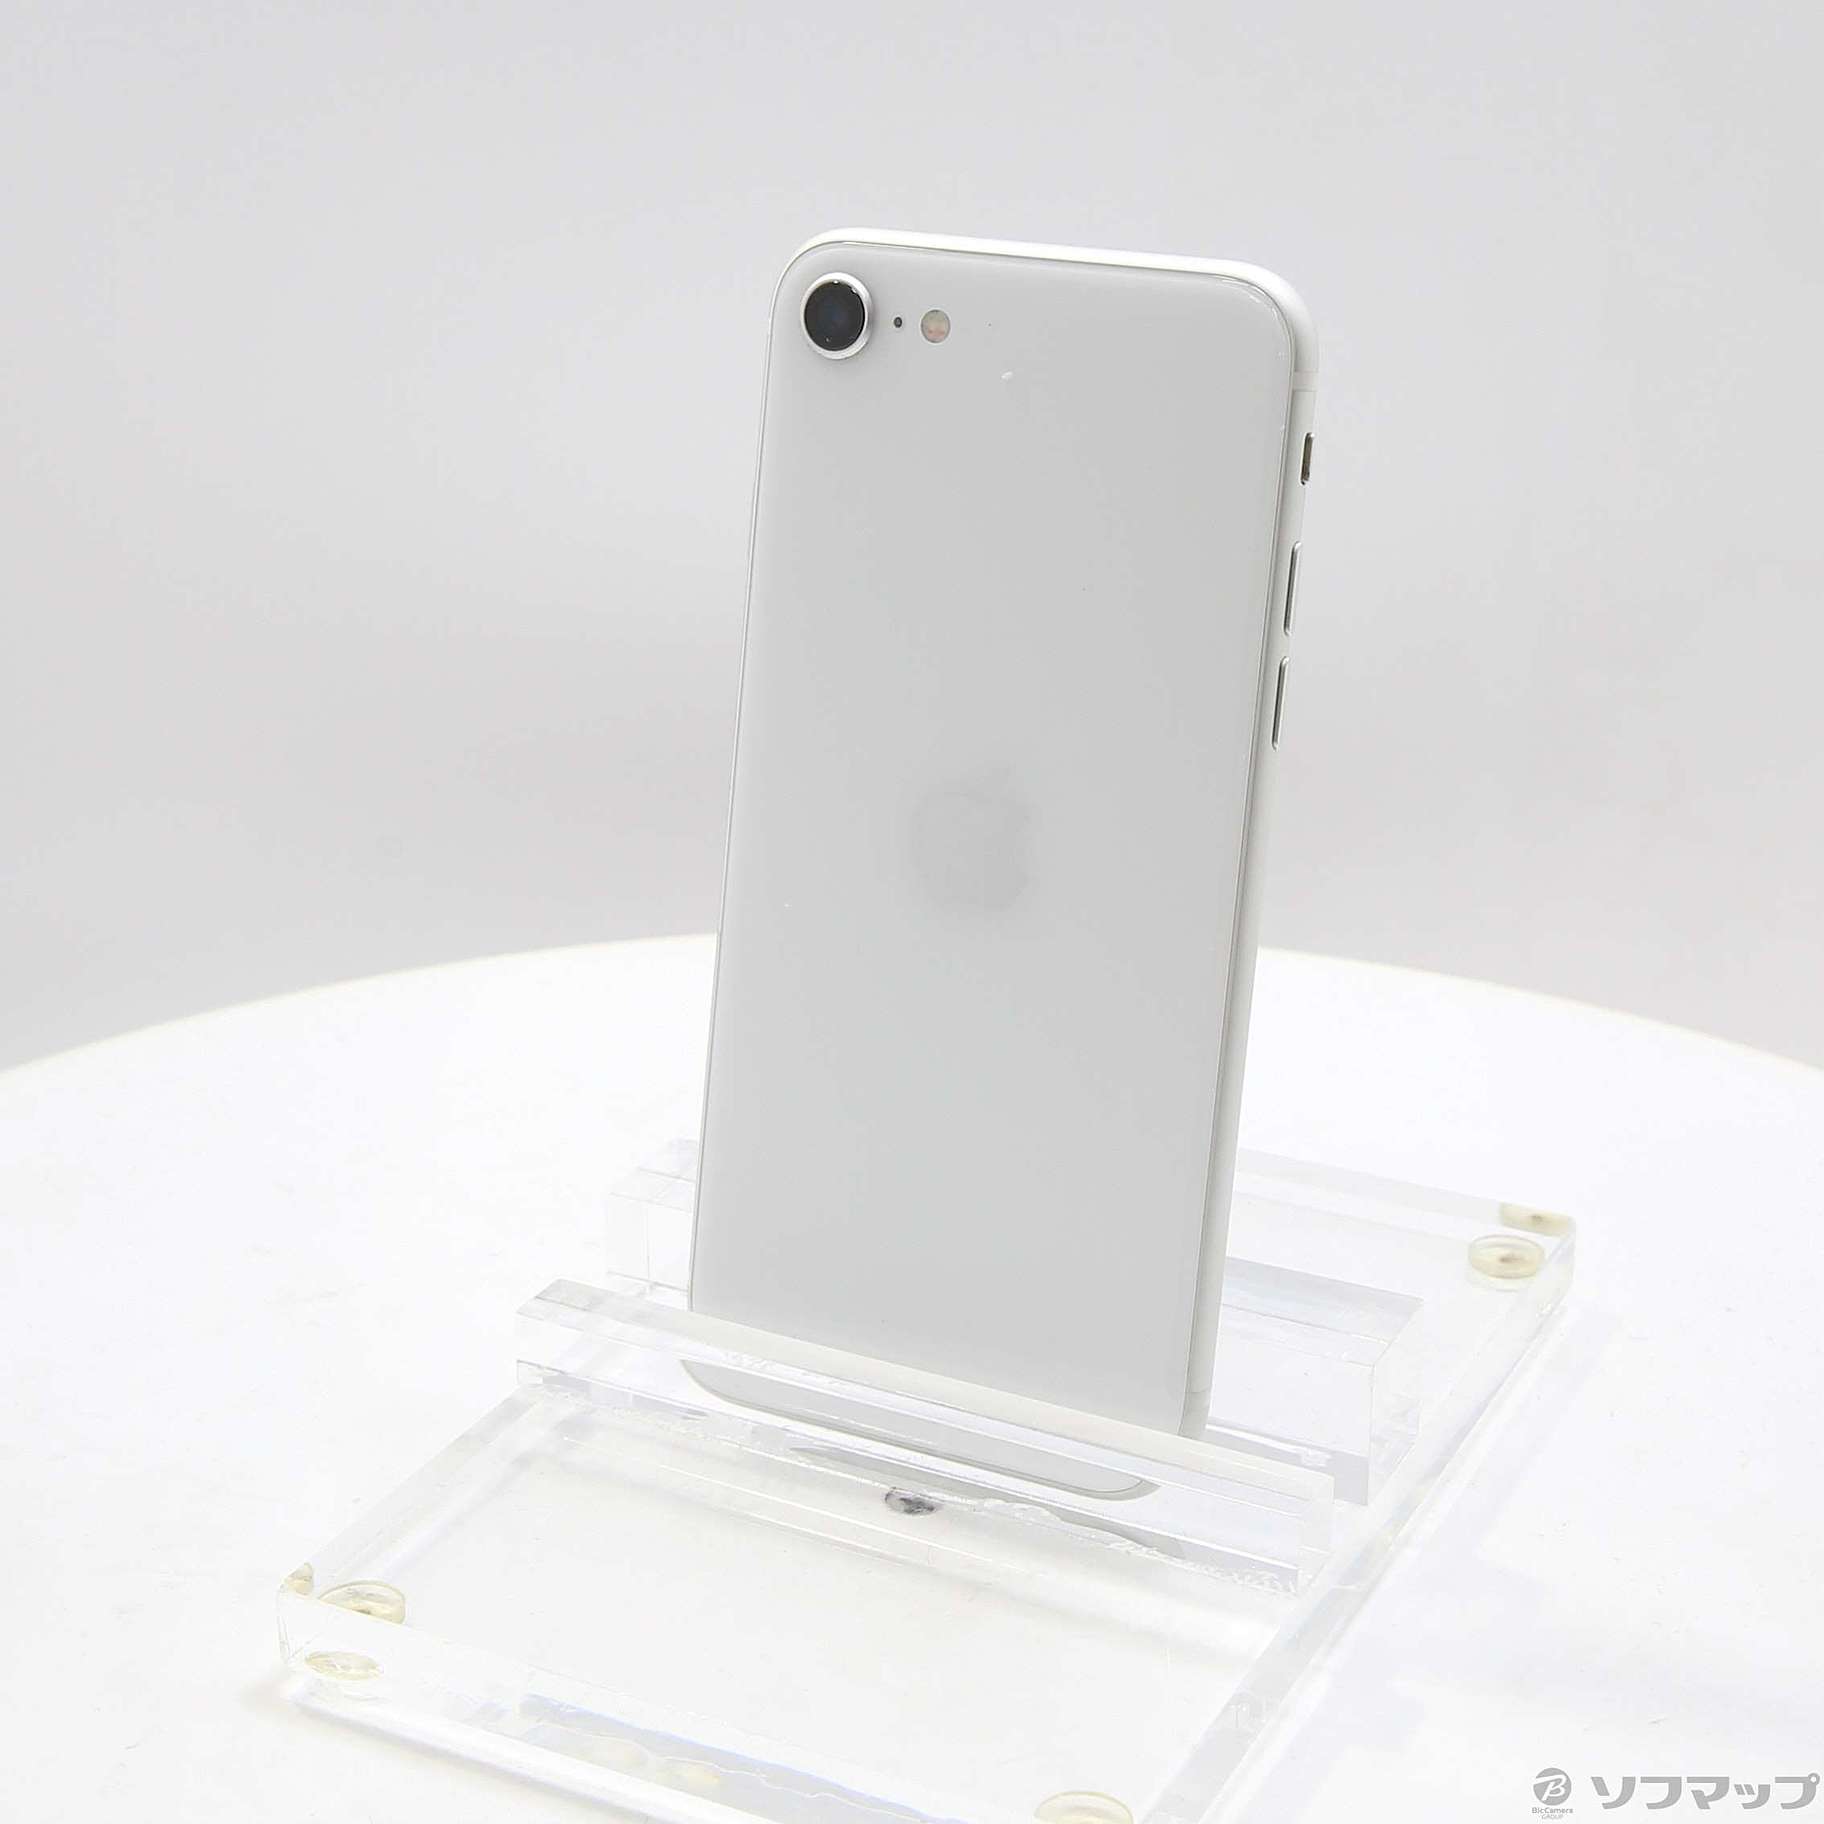 7,679円iPhone SE 第2世代 (SE2) ホワイト 64GB SIMフリー